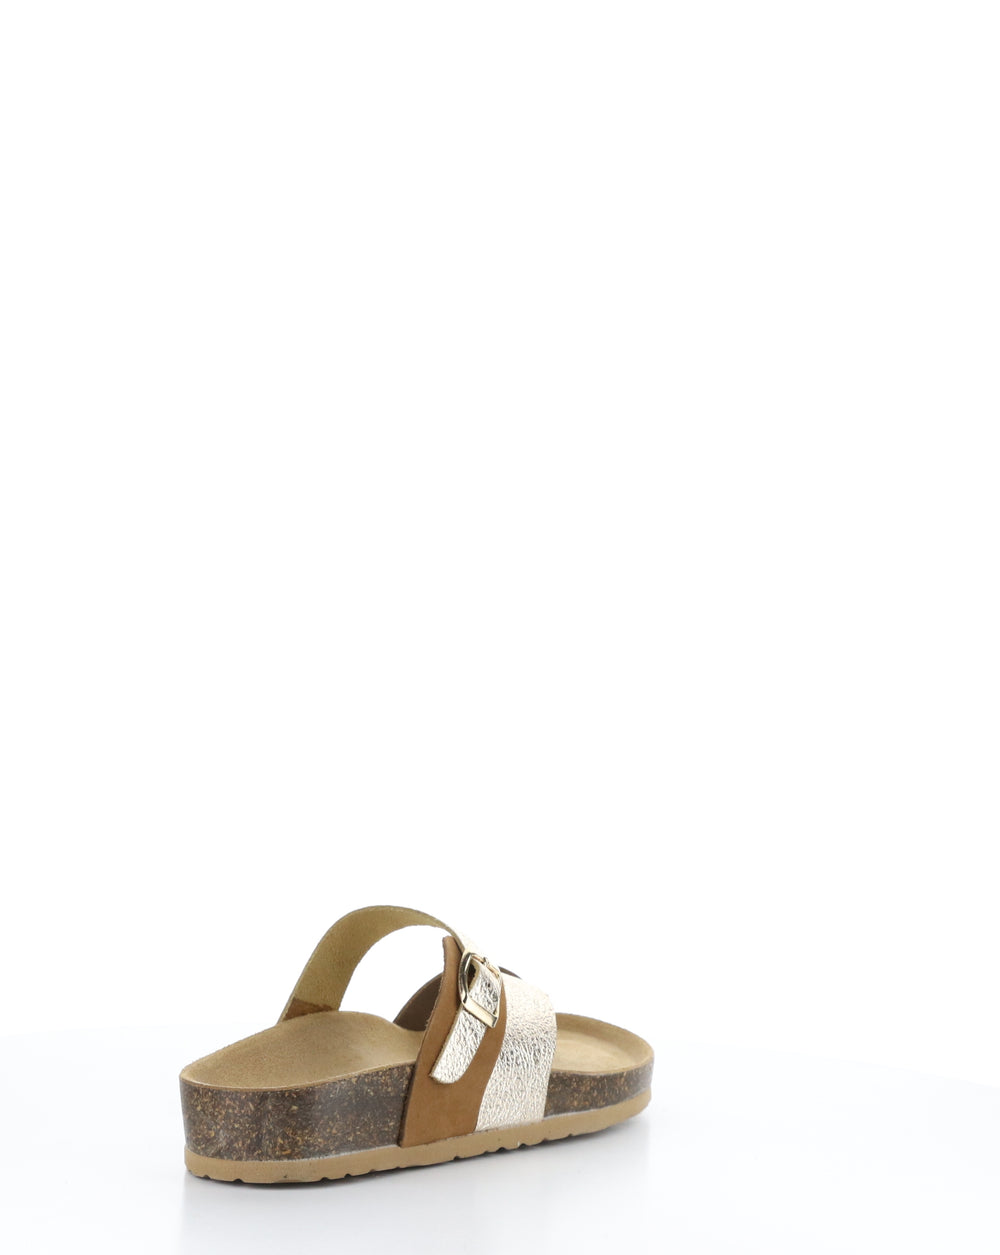 PARR BRANDY/GOLD Slip-on Sandals